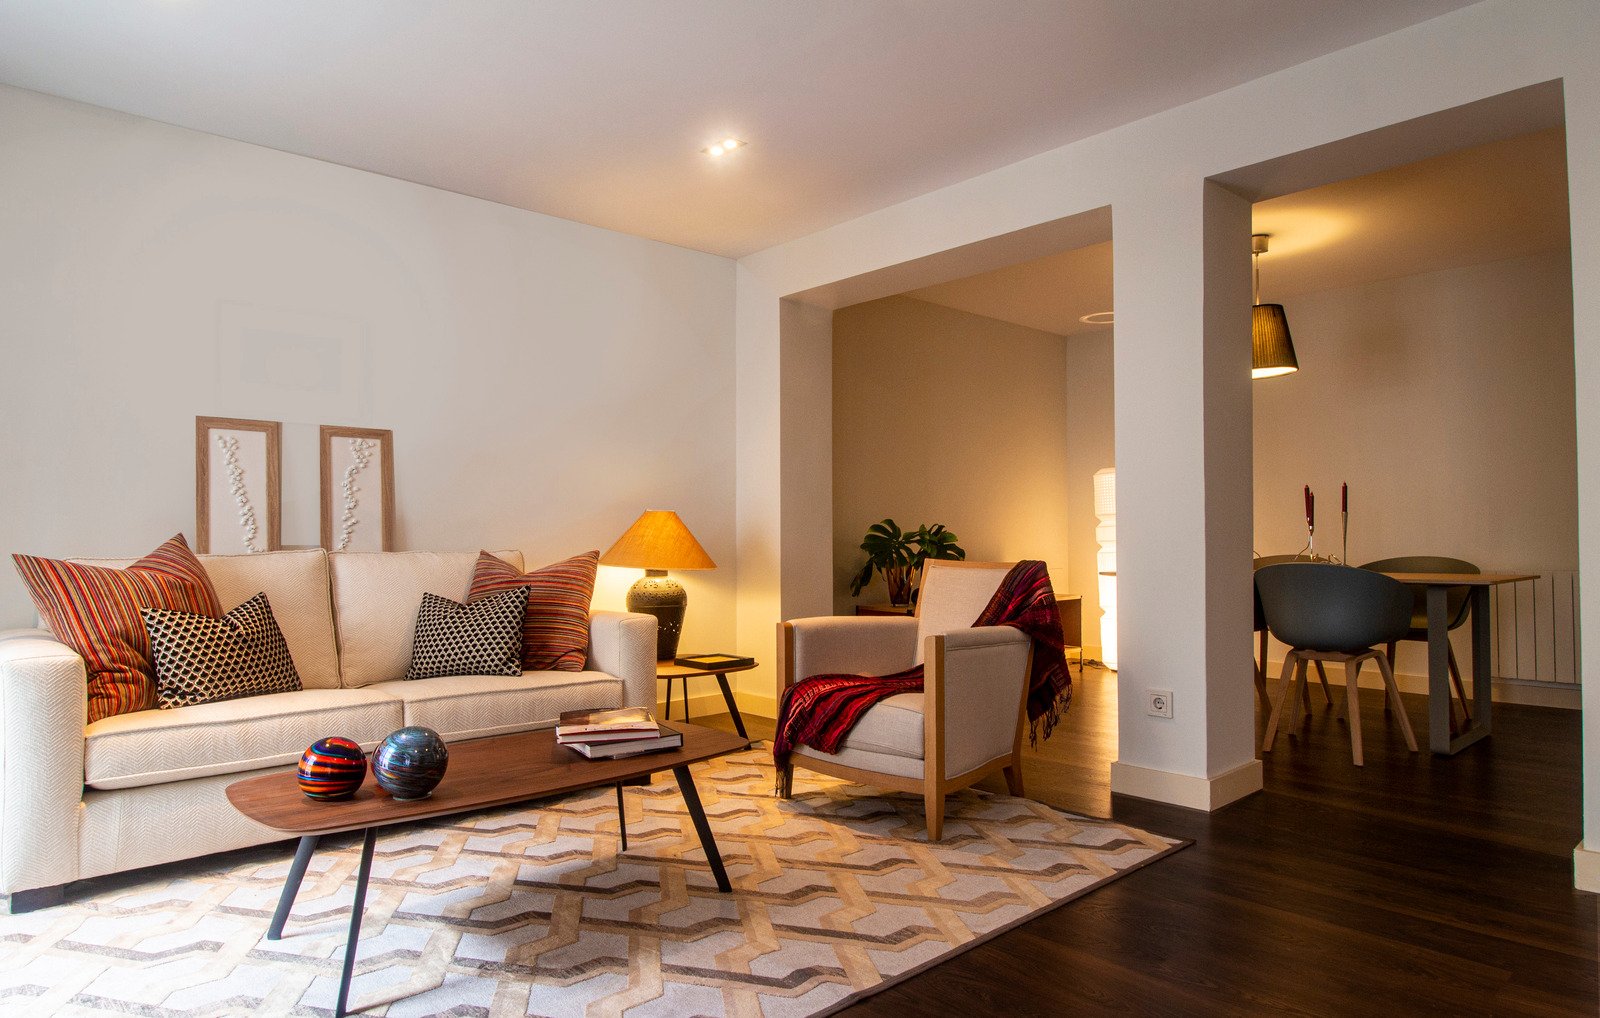 Sypialnia urządzona w stylu minimalizmu udomowionego